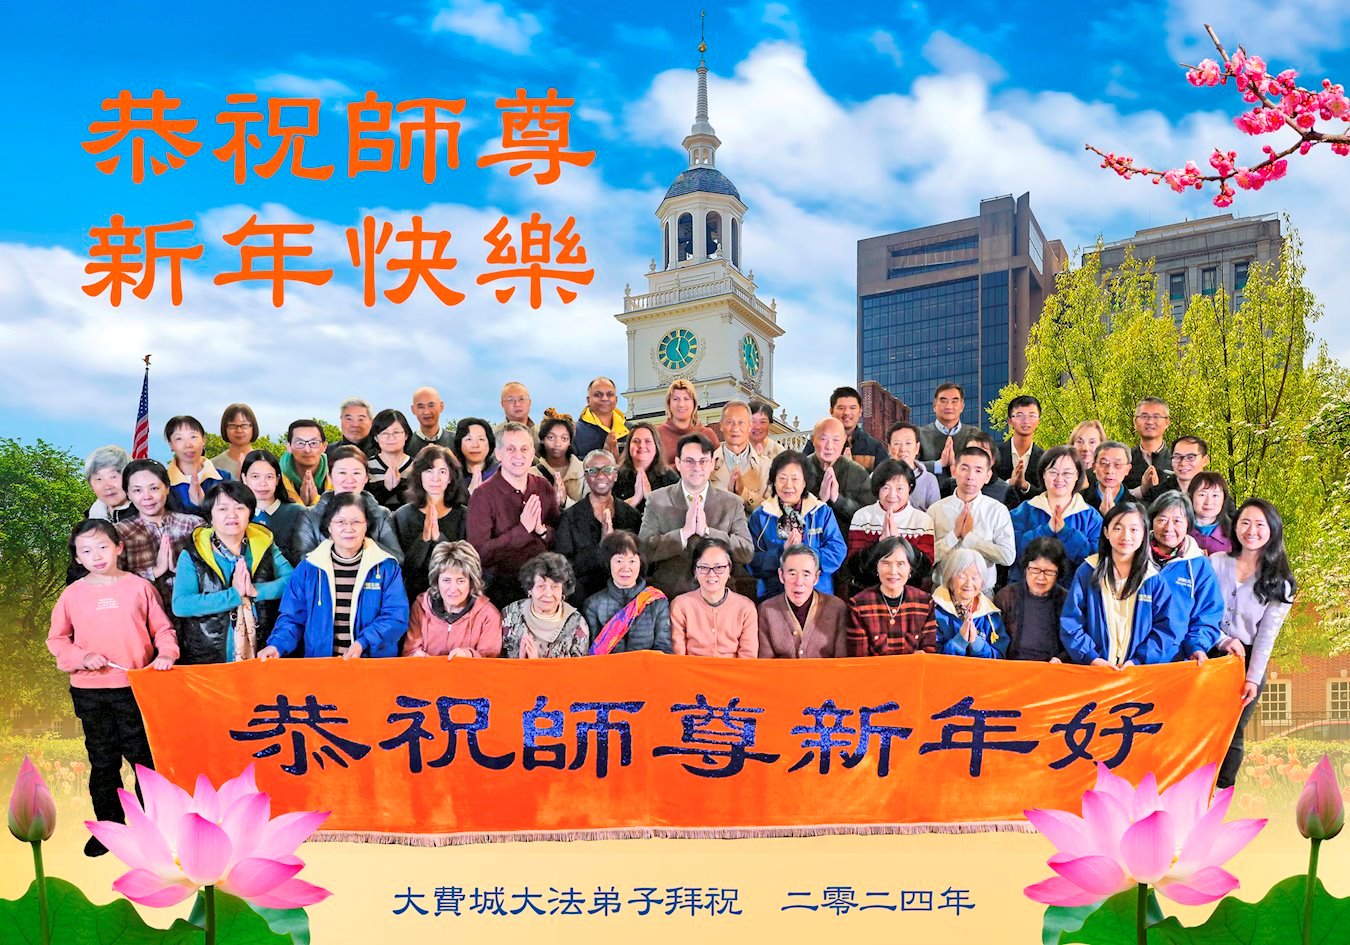 Image for article Les pratiquants de Falun Dafa de l’est des États-Unis souhaitent respectueusement une Bonne Année au Maître Li Hongzhi